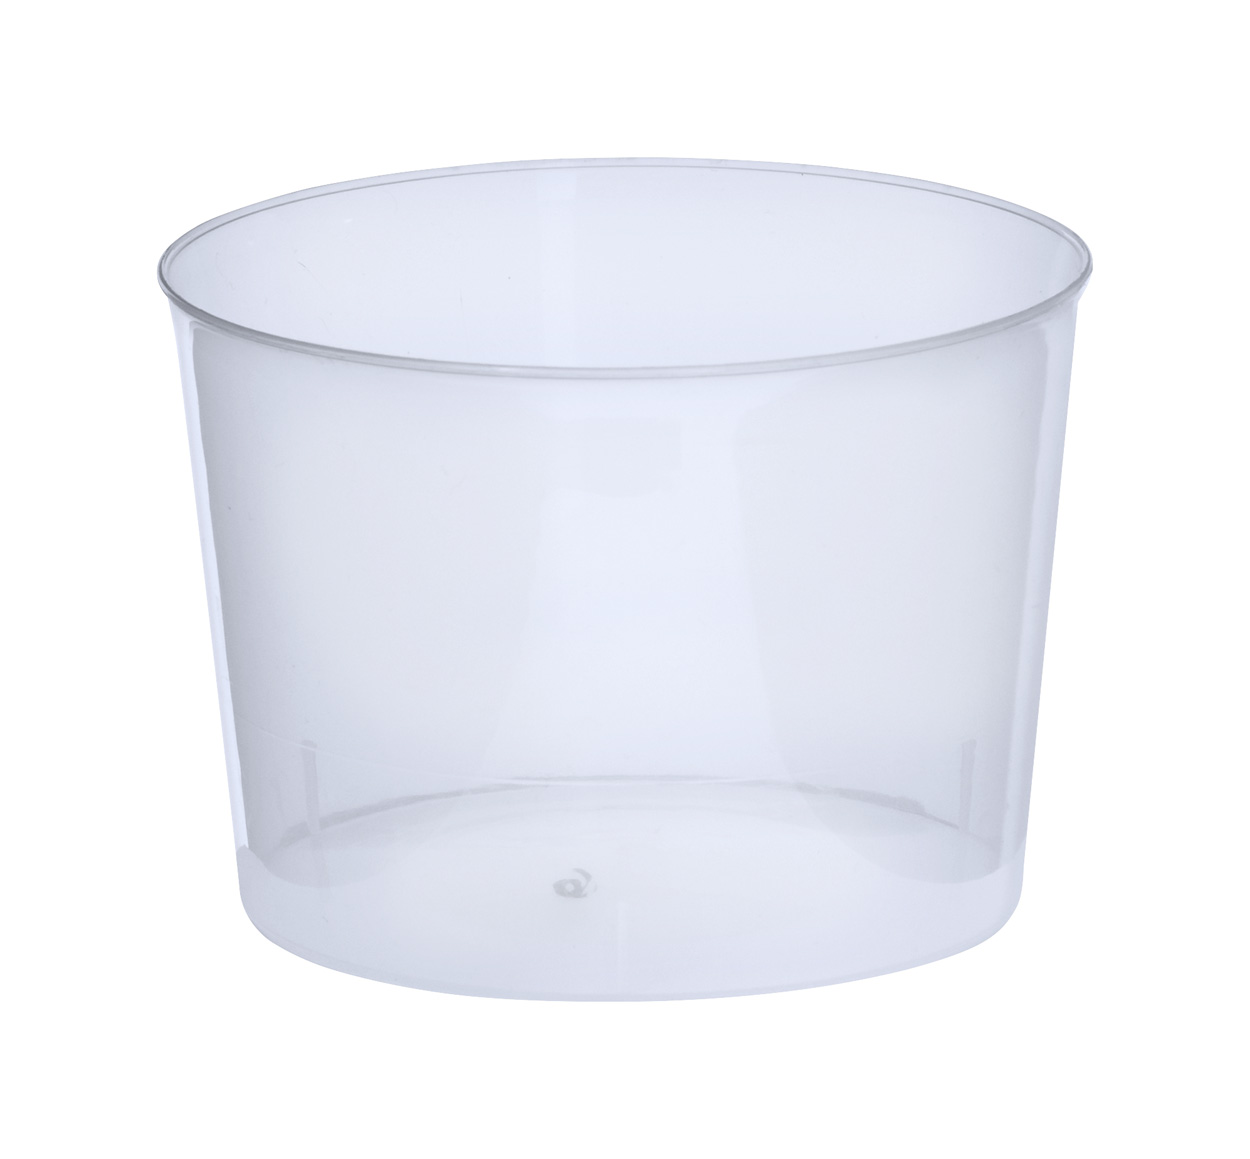 Chiquito cup - transparent